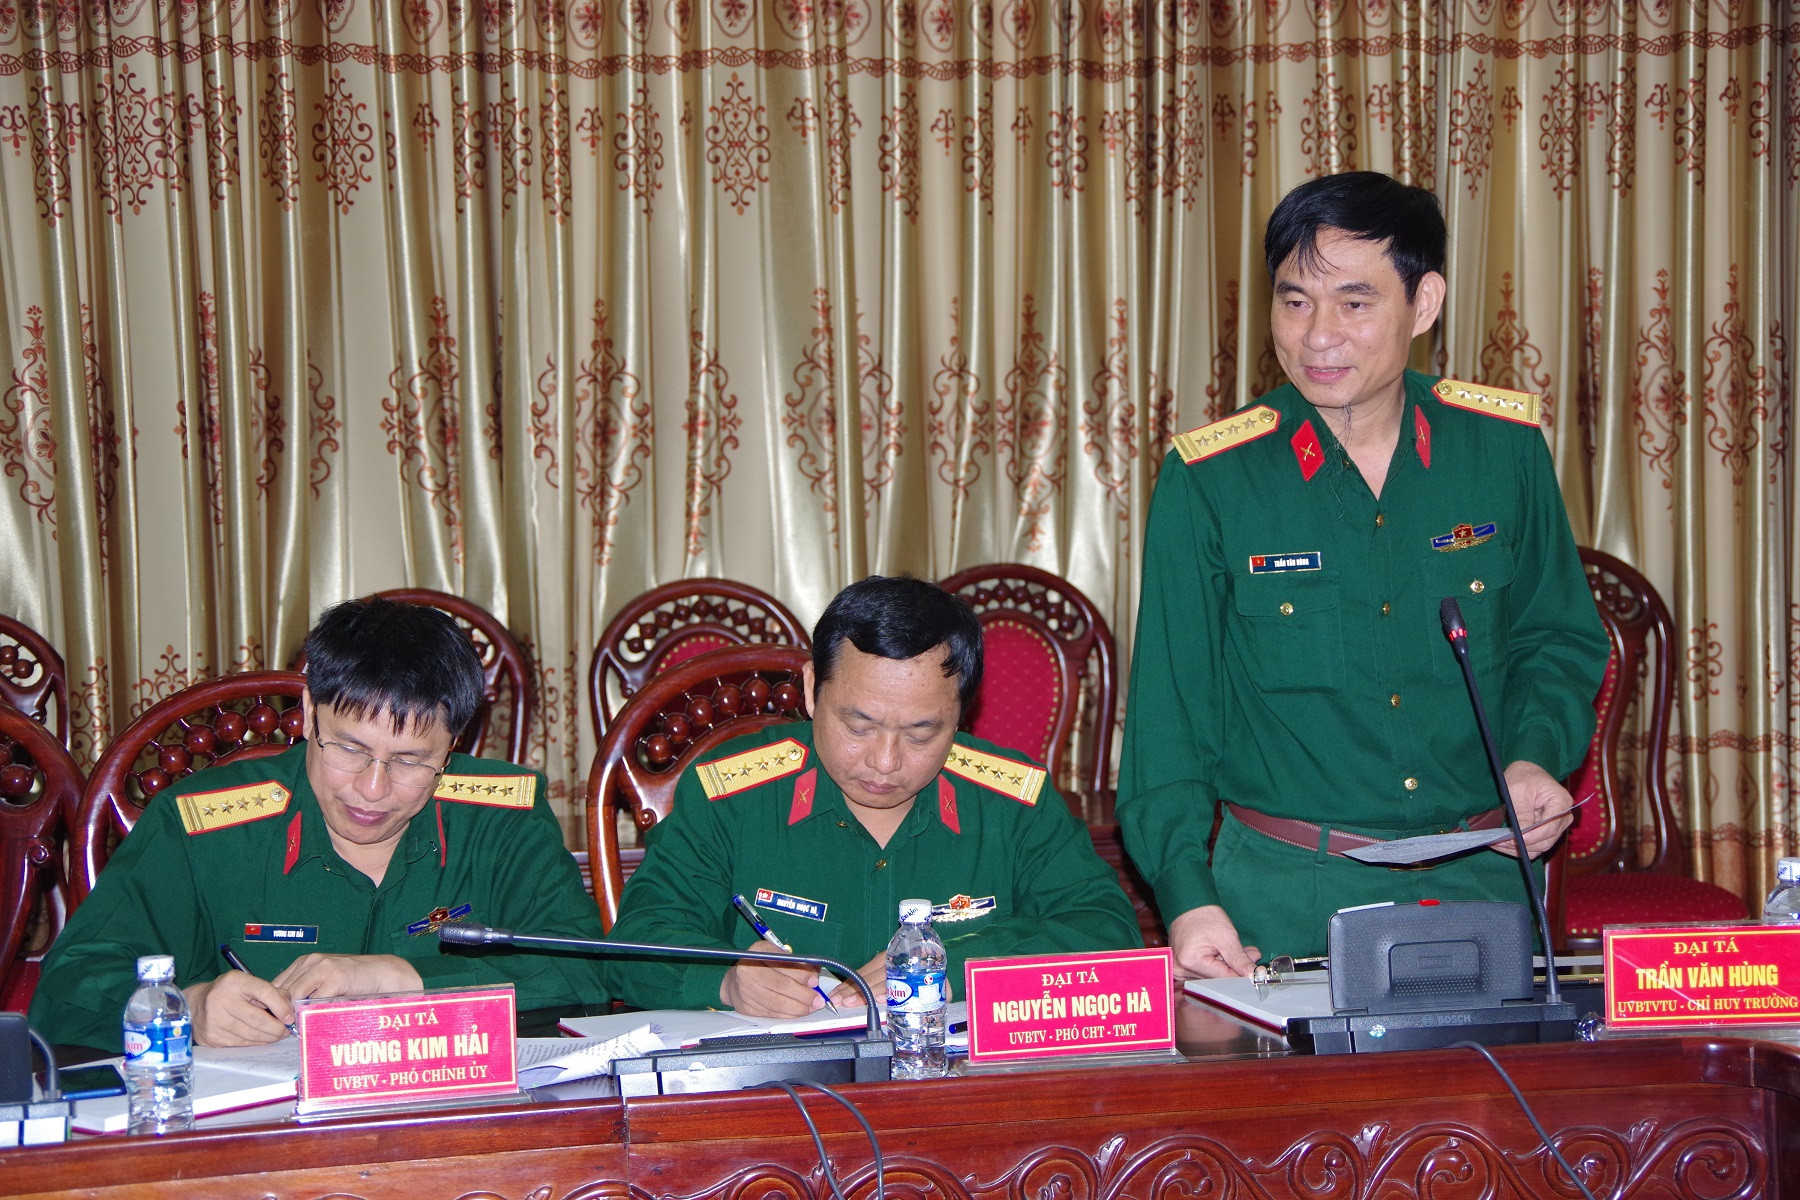 Đại tá Trần Văn Hùng - Ủy viên BTV Tỉnh ủy, Chỉ huy trưởng Bộ CHQS tỉnh phát biểu tại hội nghị. Ảnh: Phong Quang